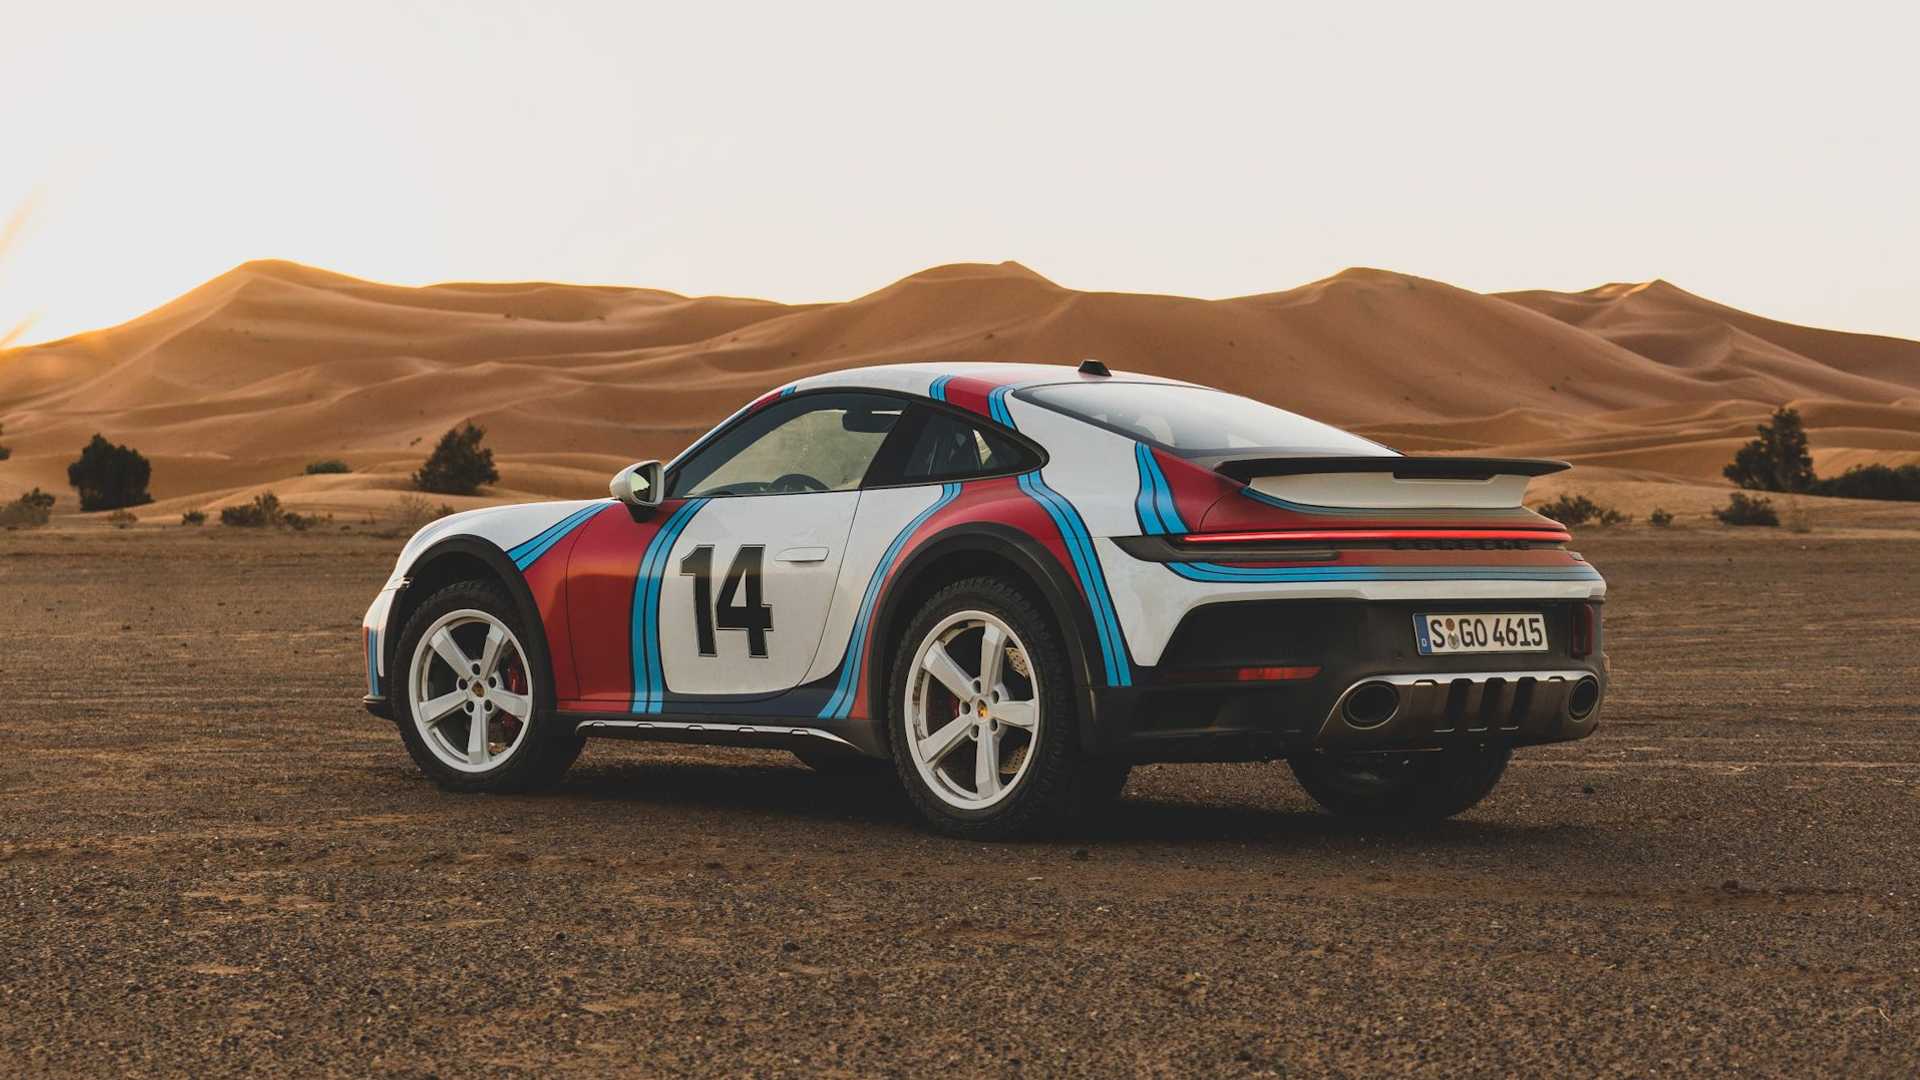 Компания Porsche представляет ливрею для Porsche 911 Dakar в стиле 1970-х годов